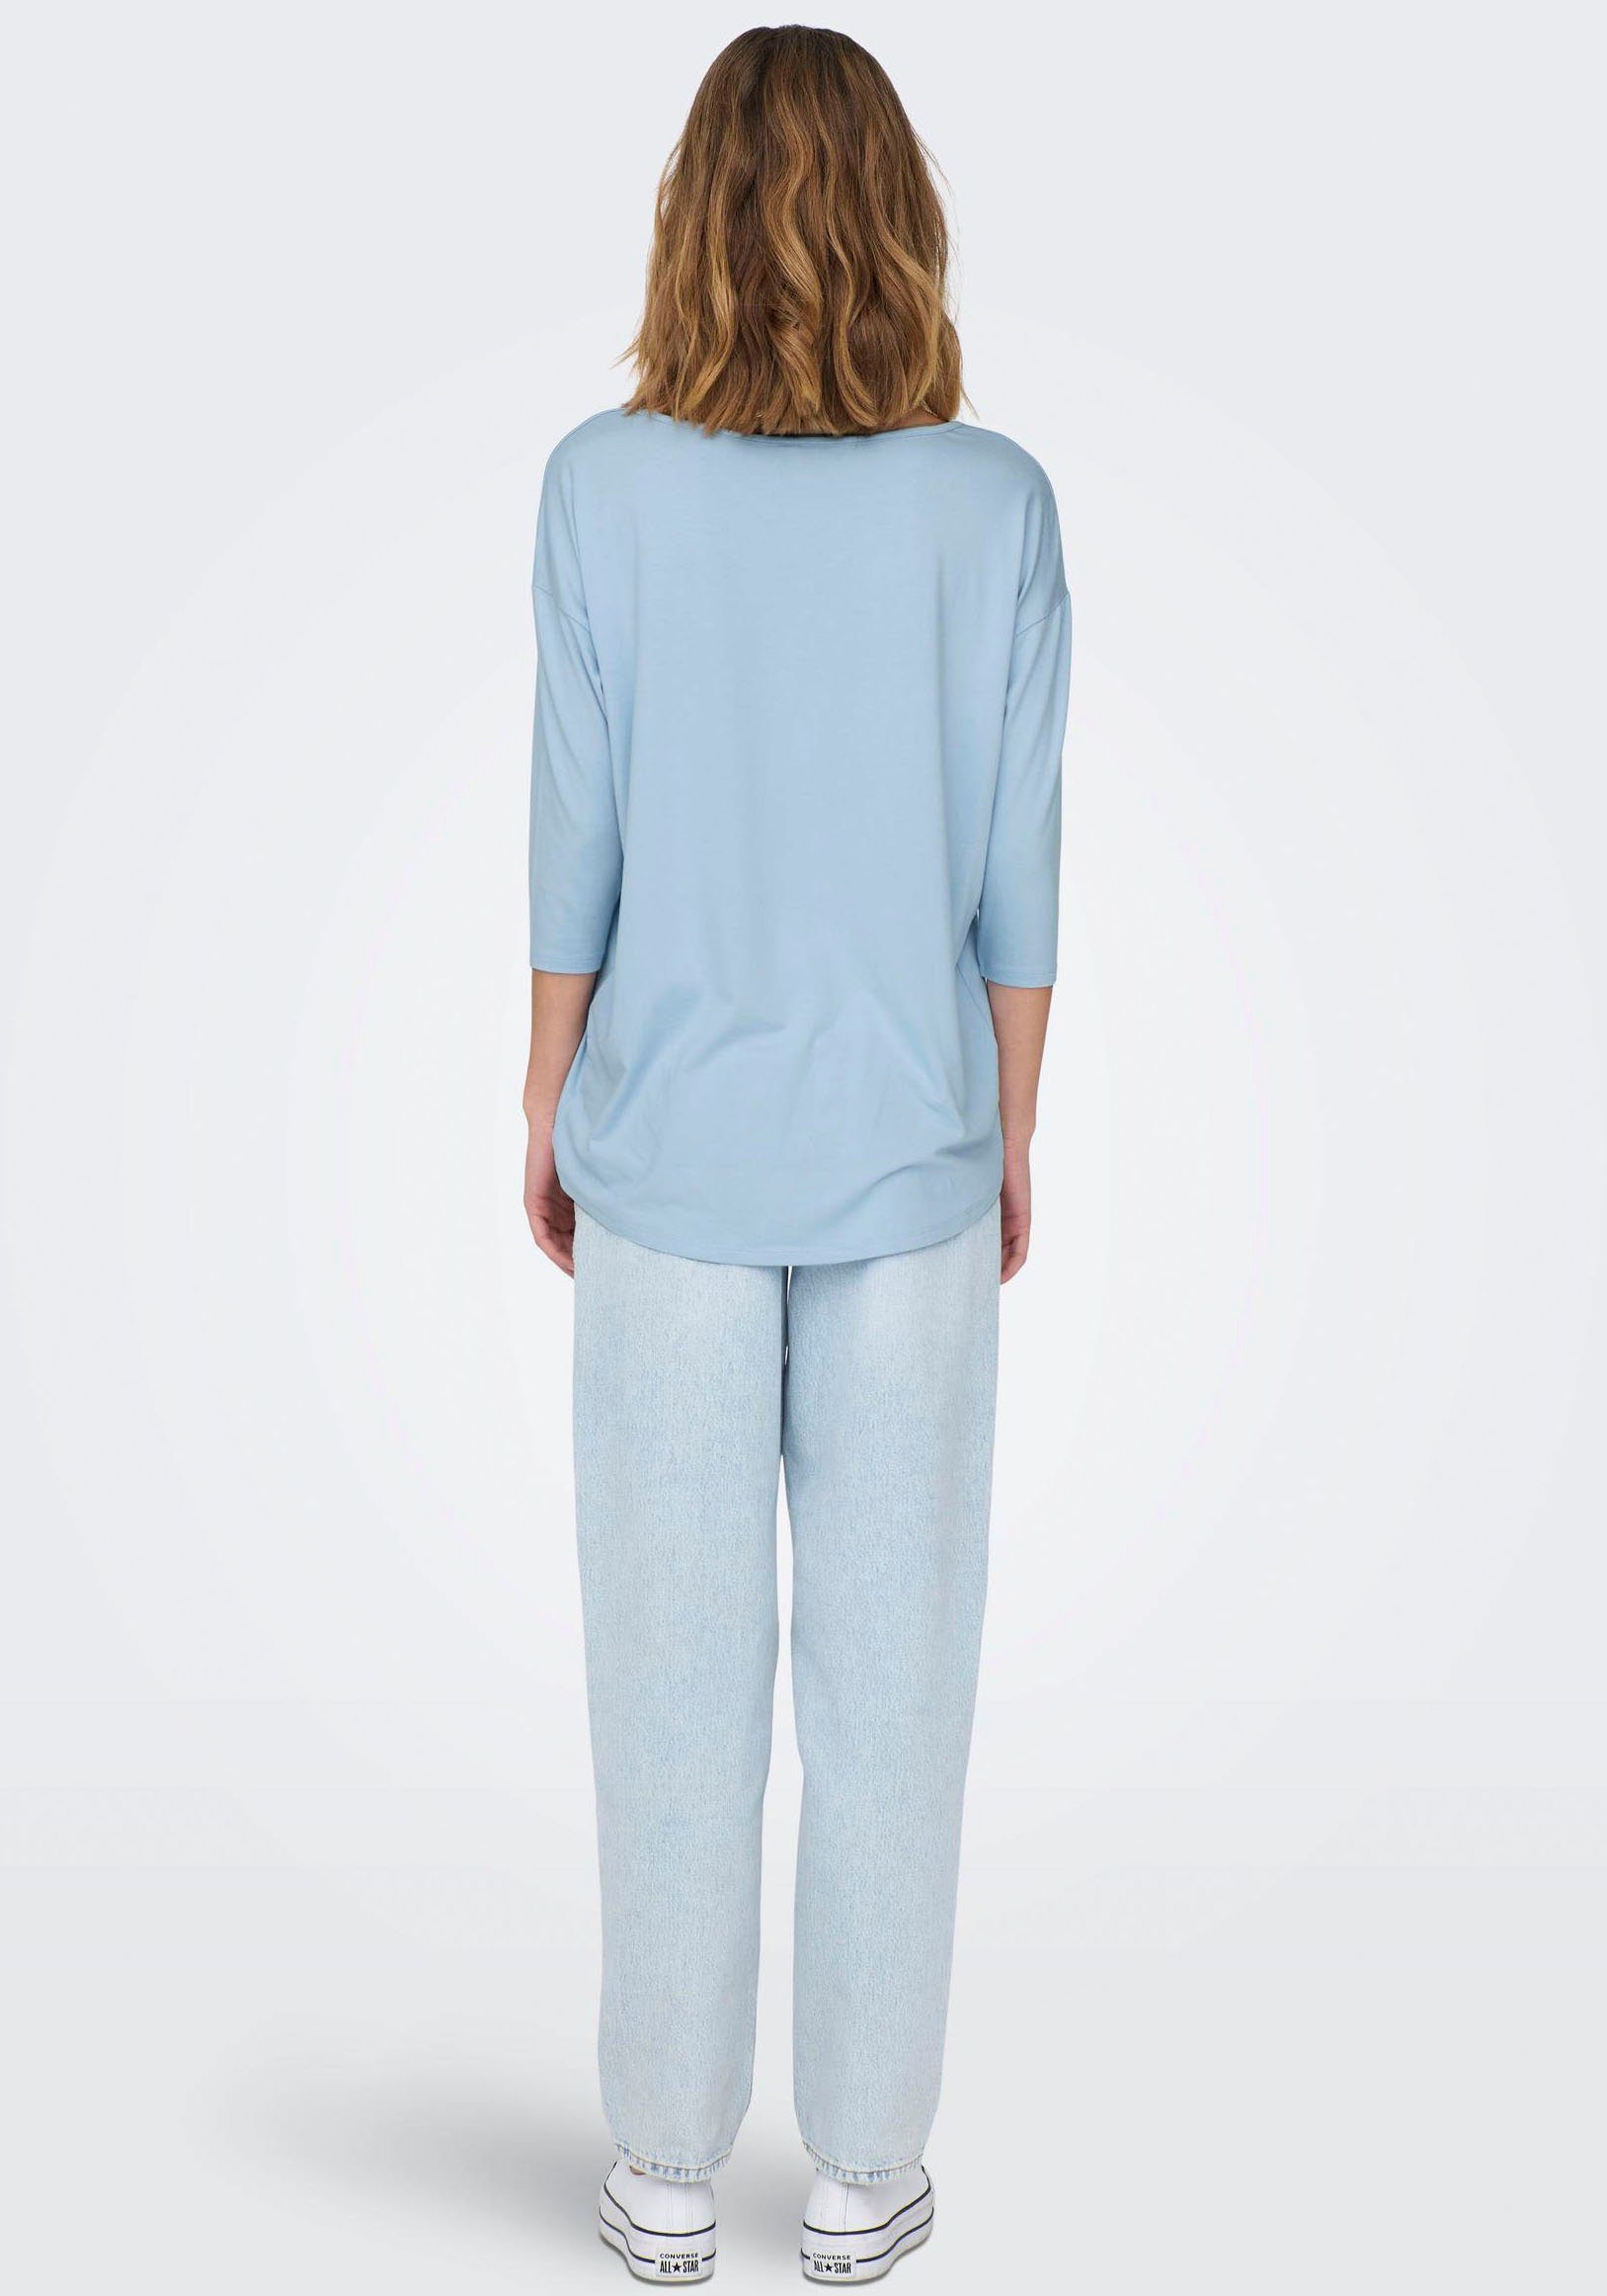 ONLY 3/4-Arm-Shirt ONLMOSTER TAPE Blue Cashmere SHOULDER CS TOP Detail:Melange 3/4